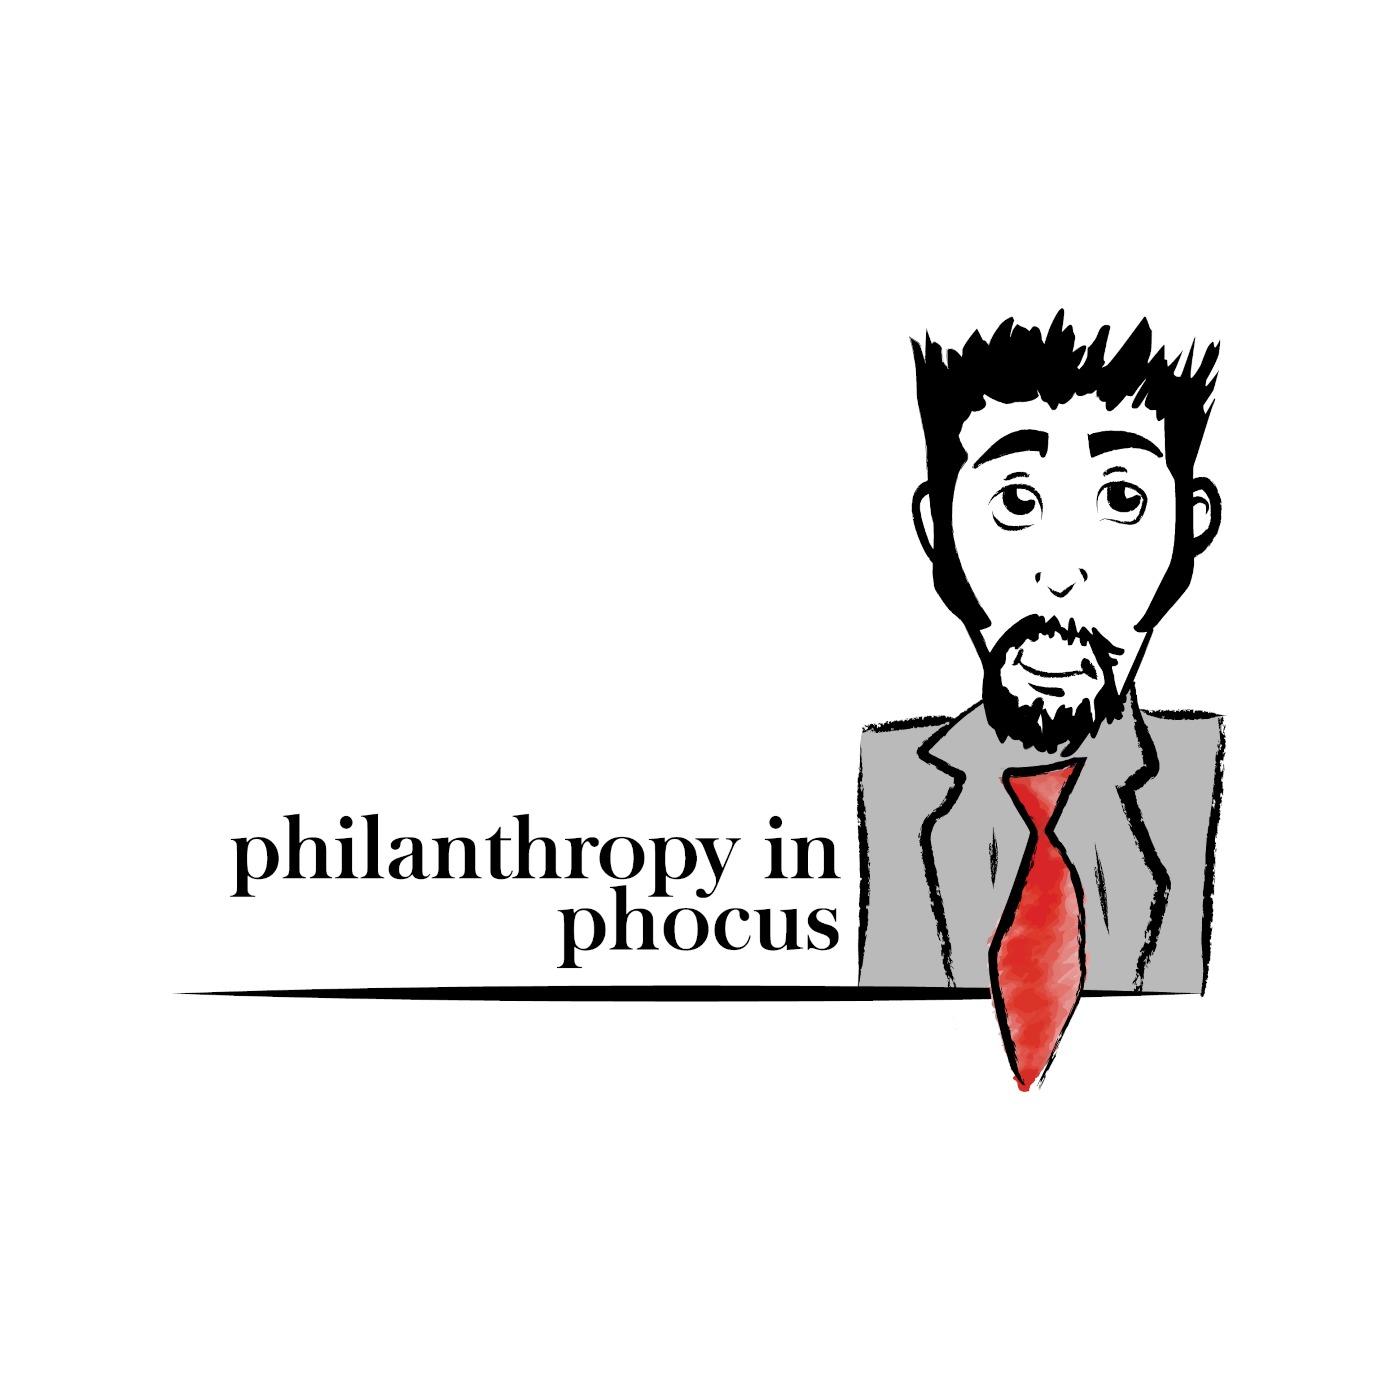 Philanthropy in Phocus